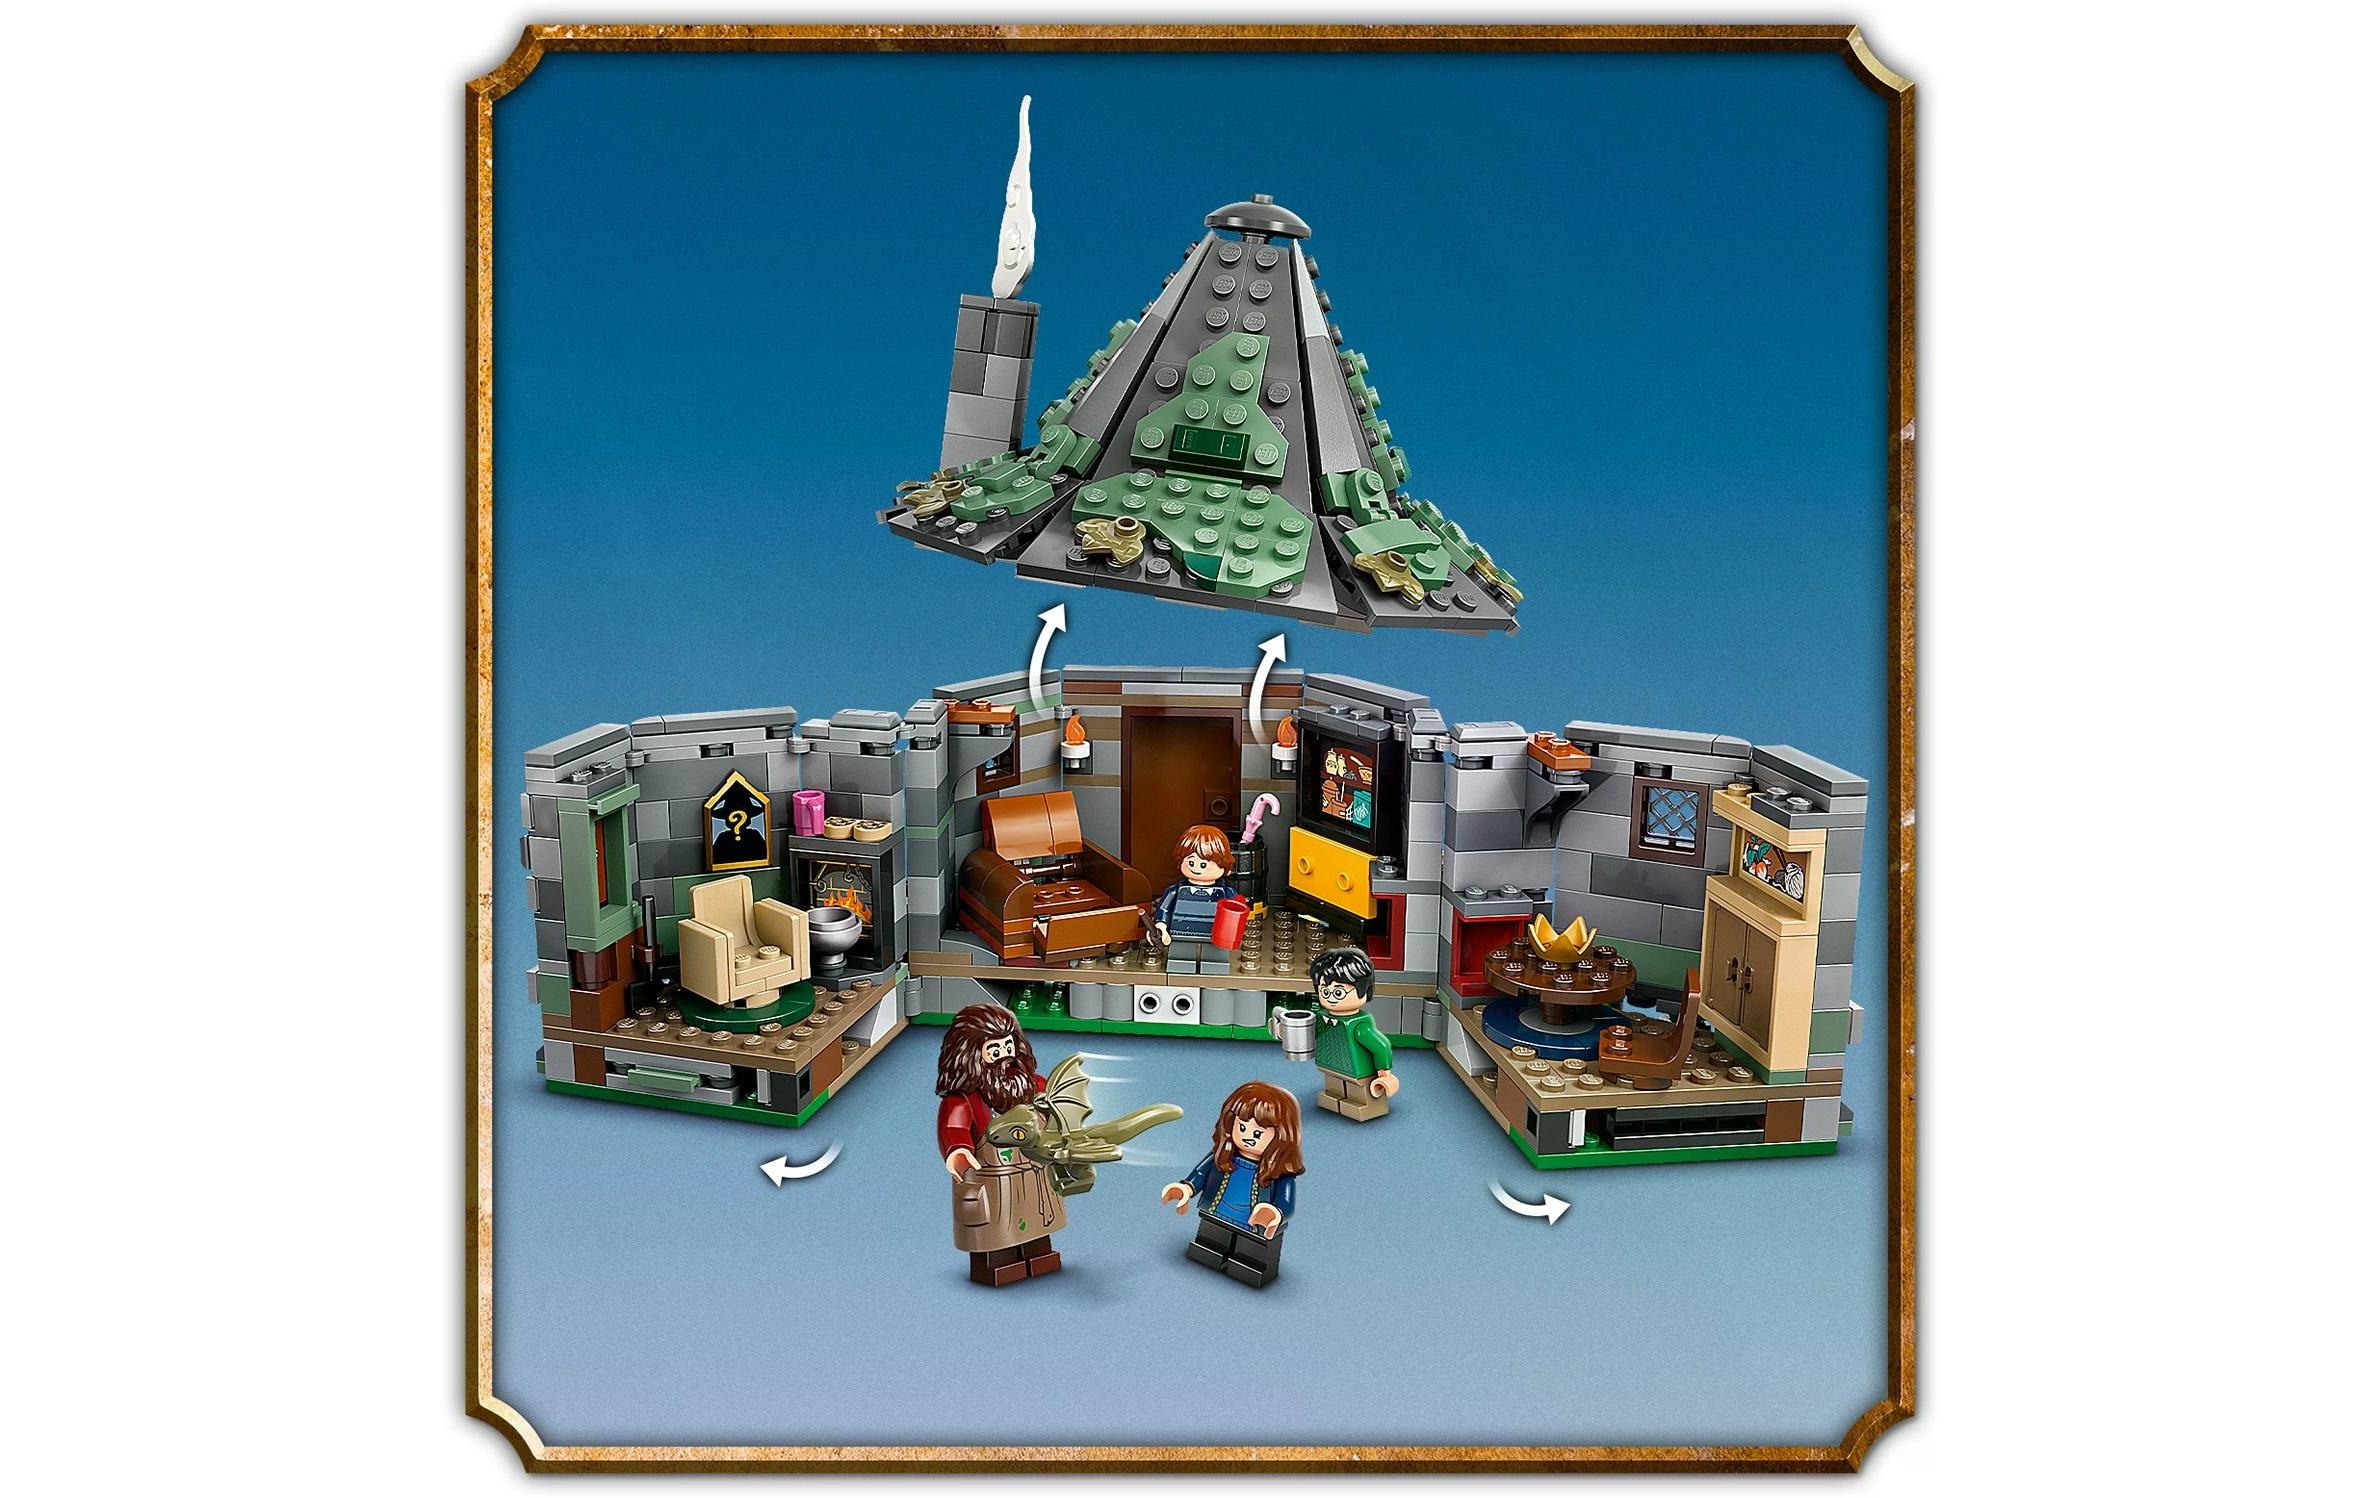 LEGO® Spielbausteine »Harry Potter Hagrids Hütte: Ein unerwarteter Besuch 76428«, (896 St.)